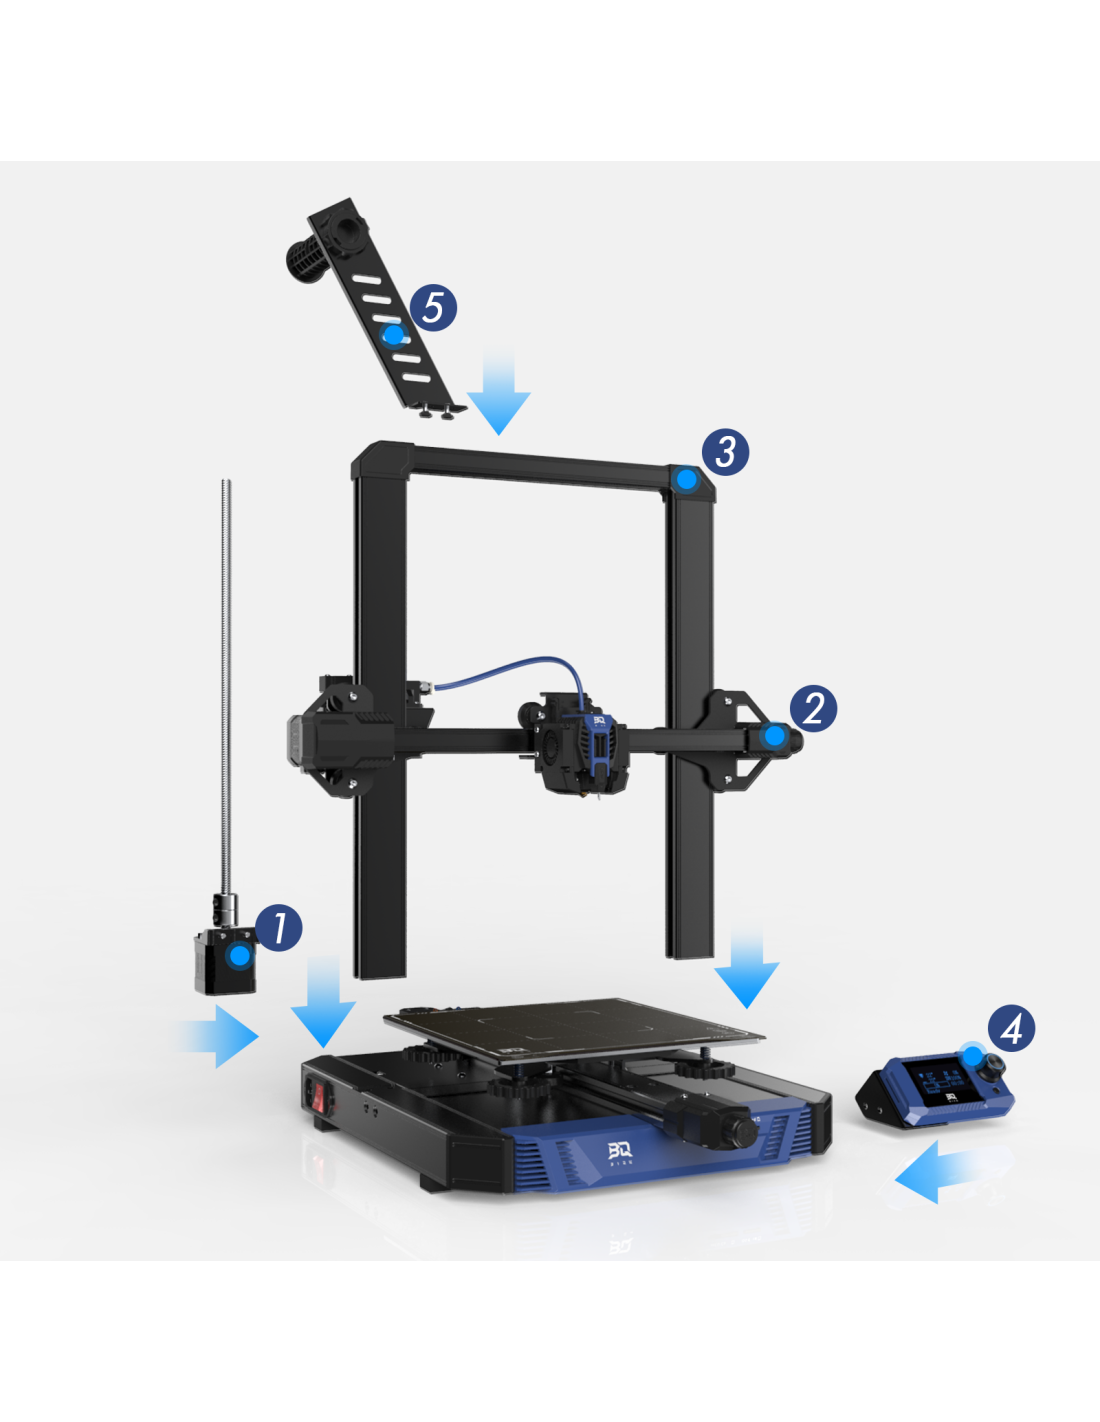 BIQU Hurakan Klipper Hochgeschwindigkeits-3D-Drucker